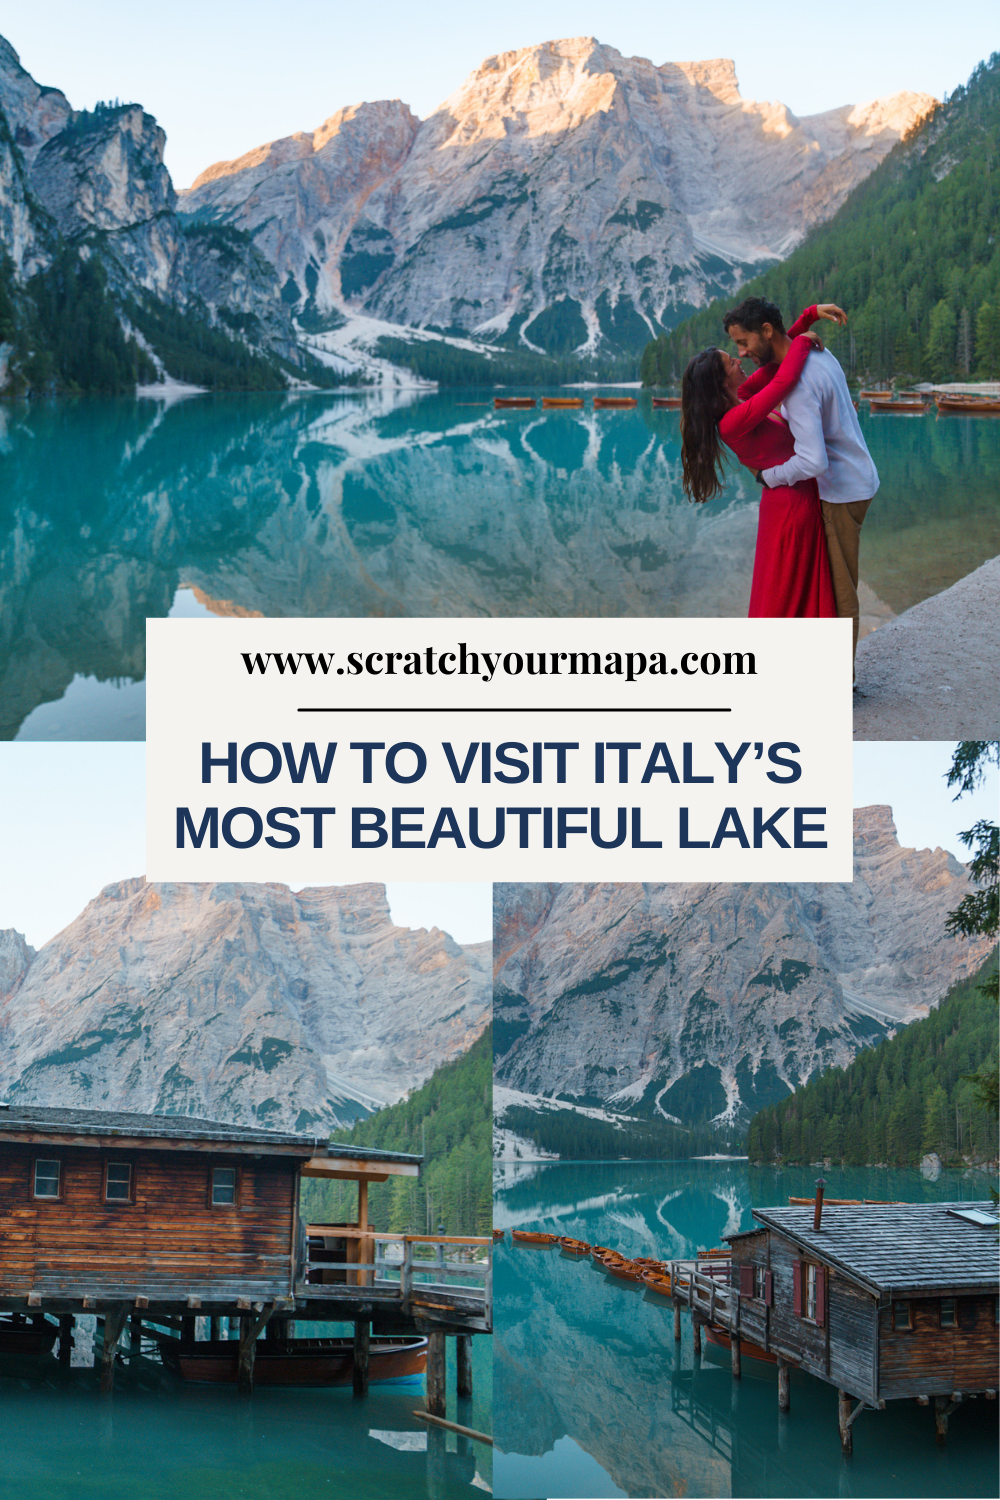 how to visit Lago di Braies